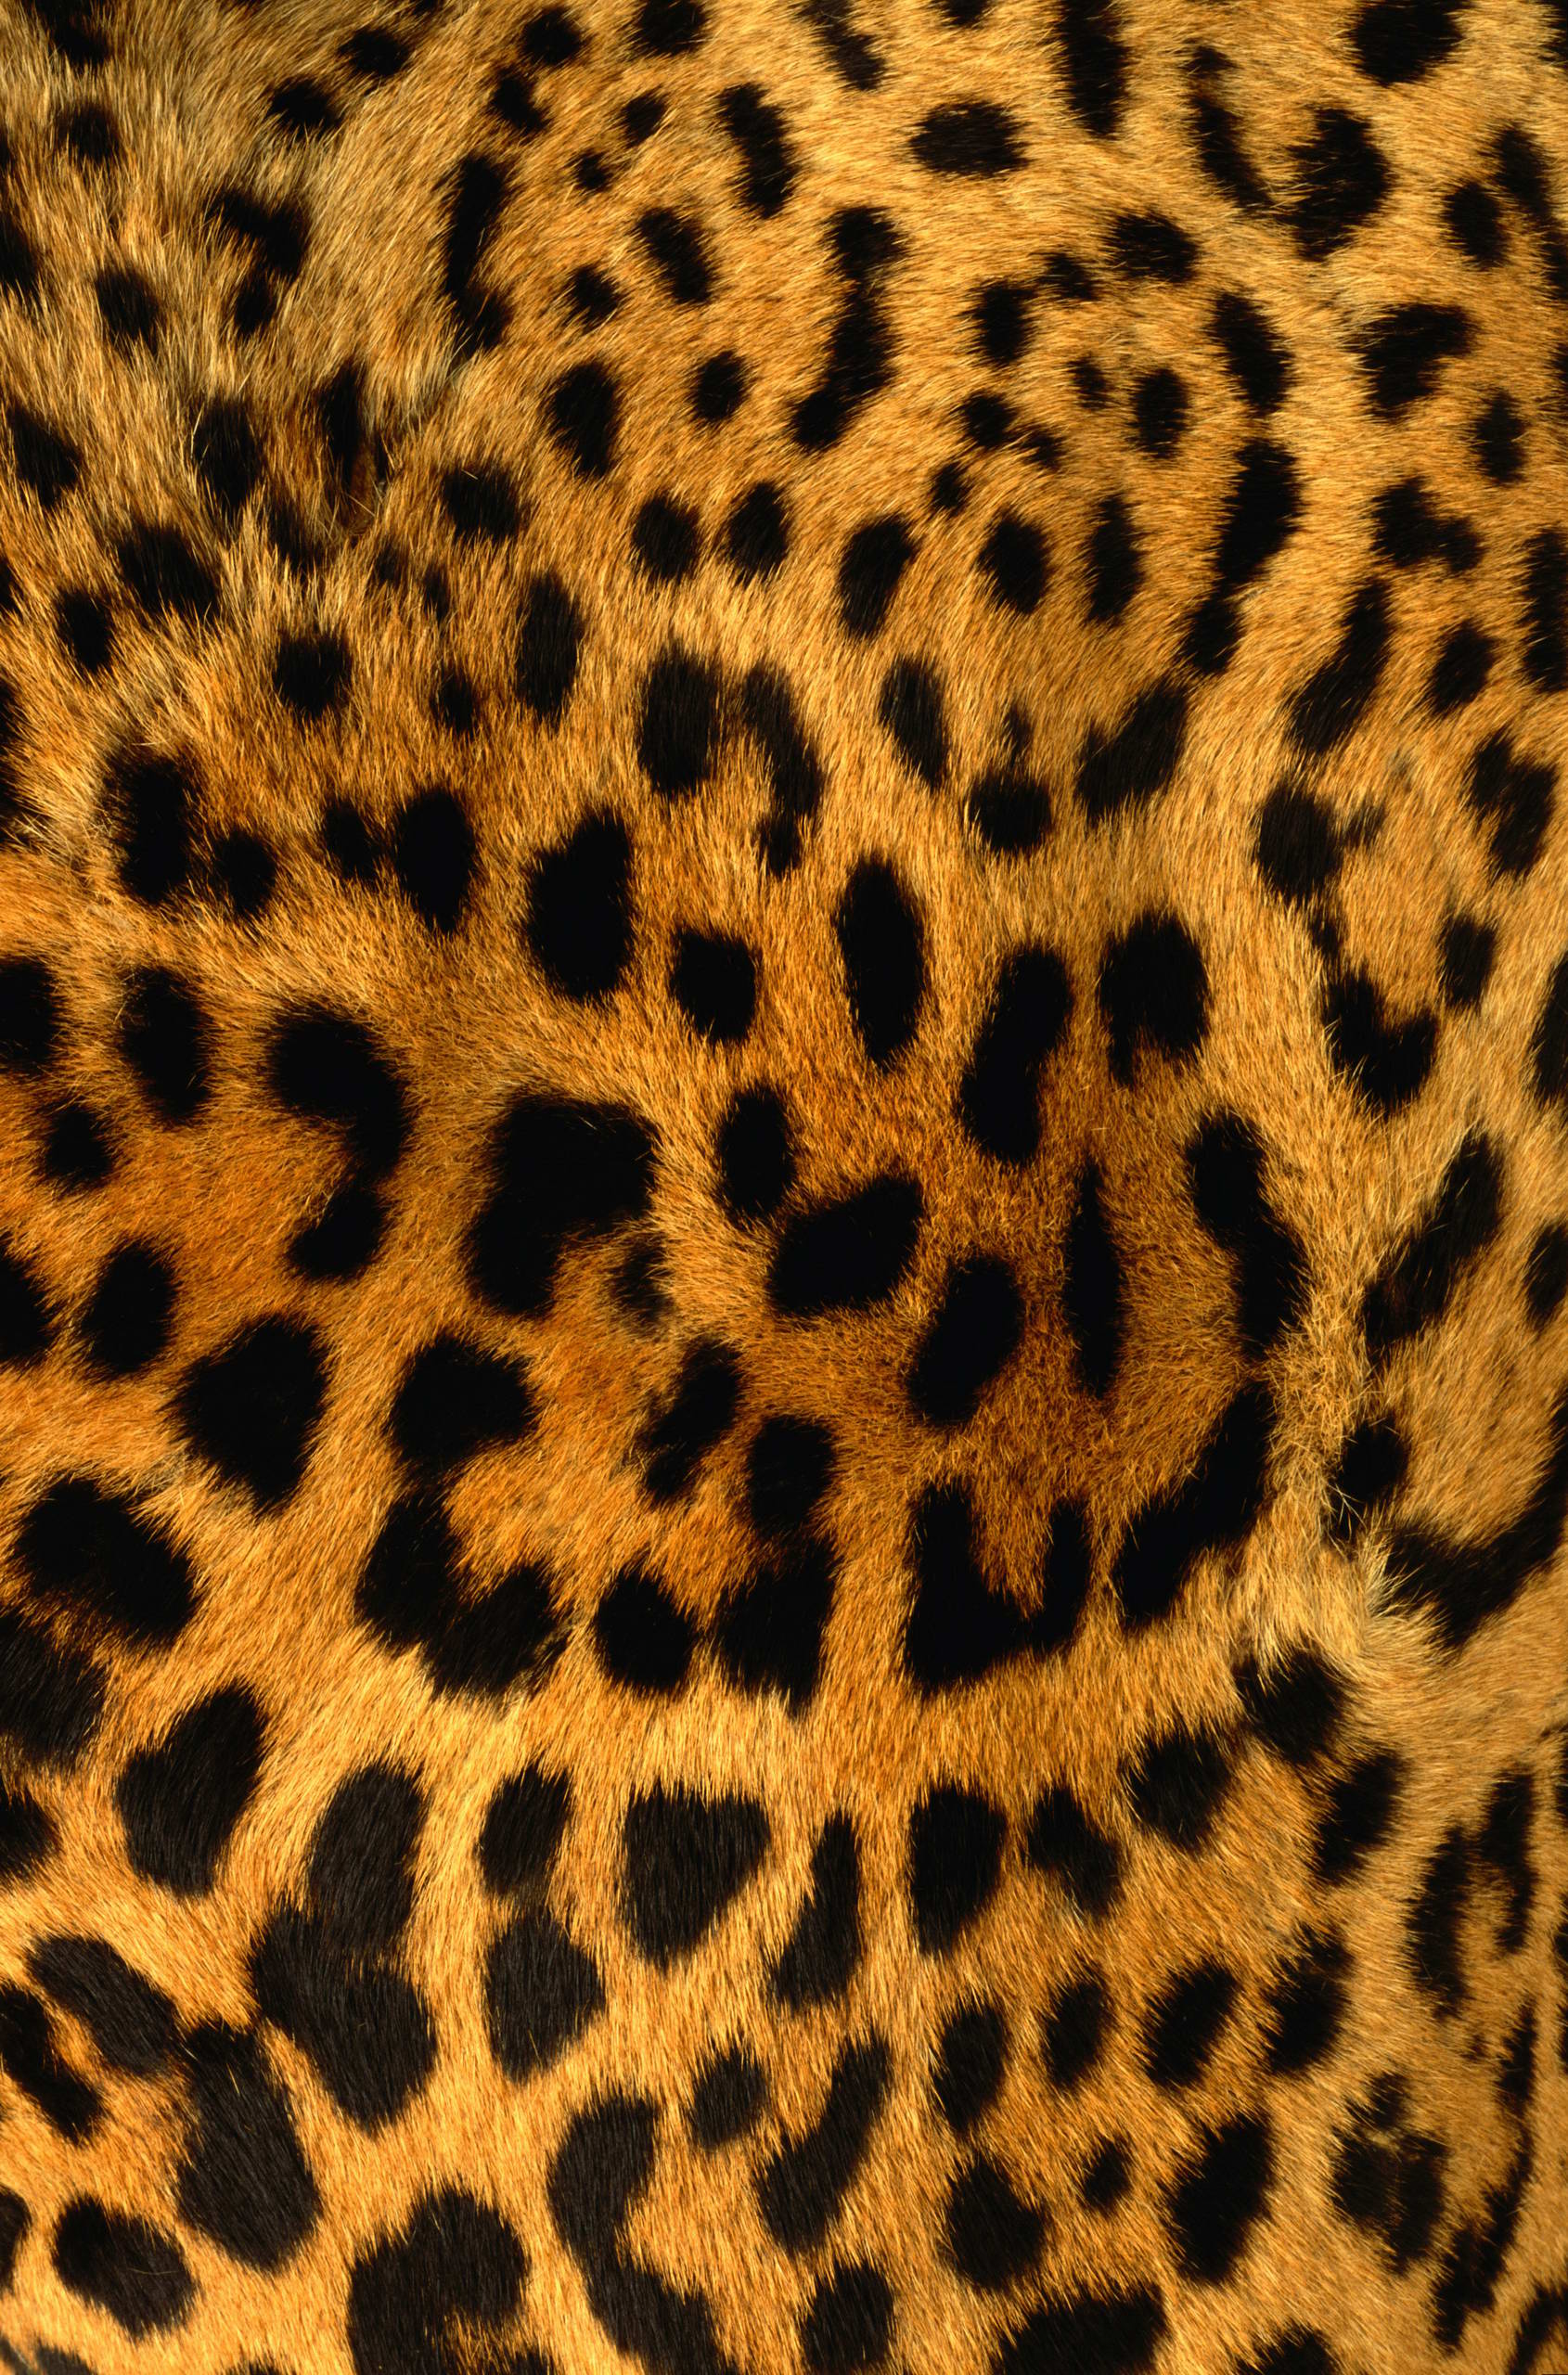 Leopard Skin Wallpaper - WallpaperSafari